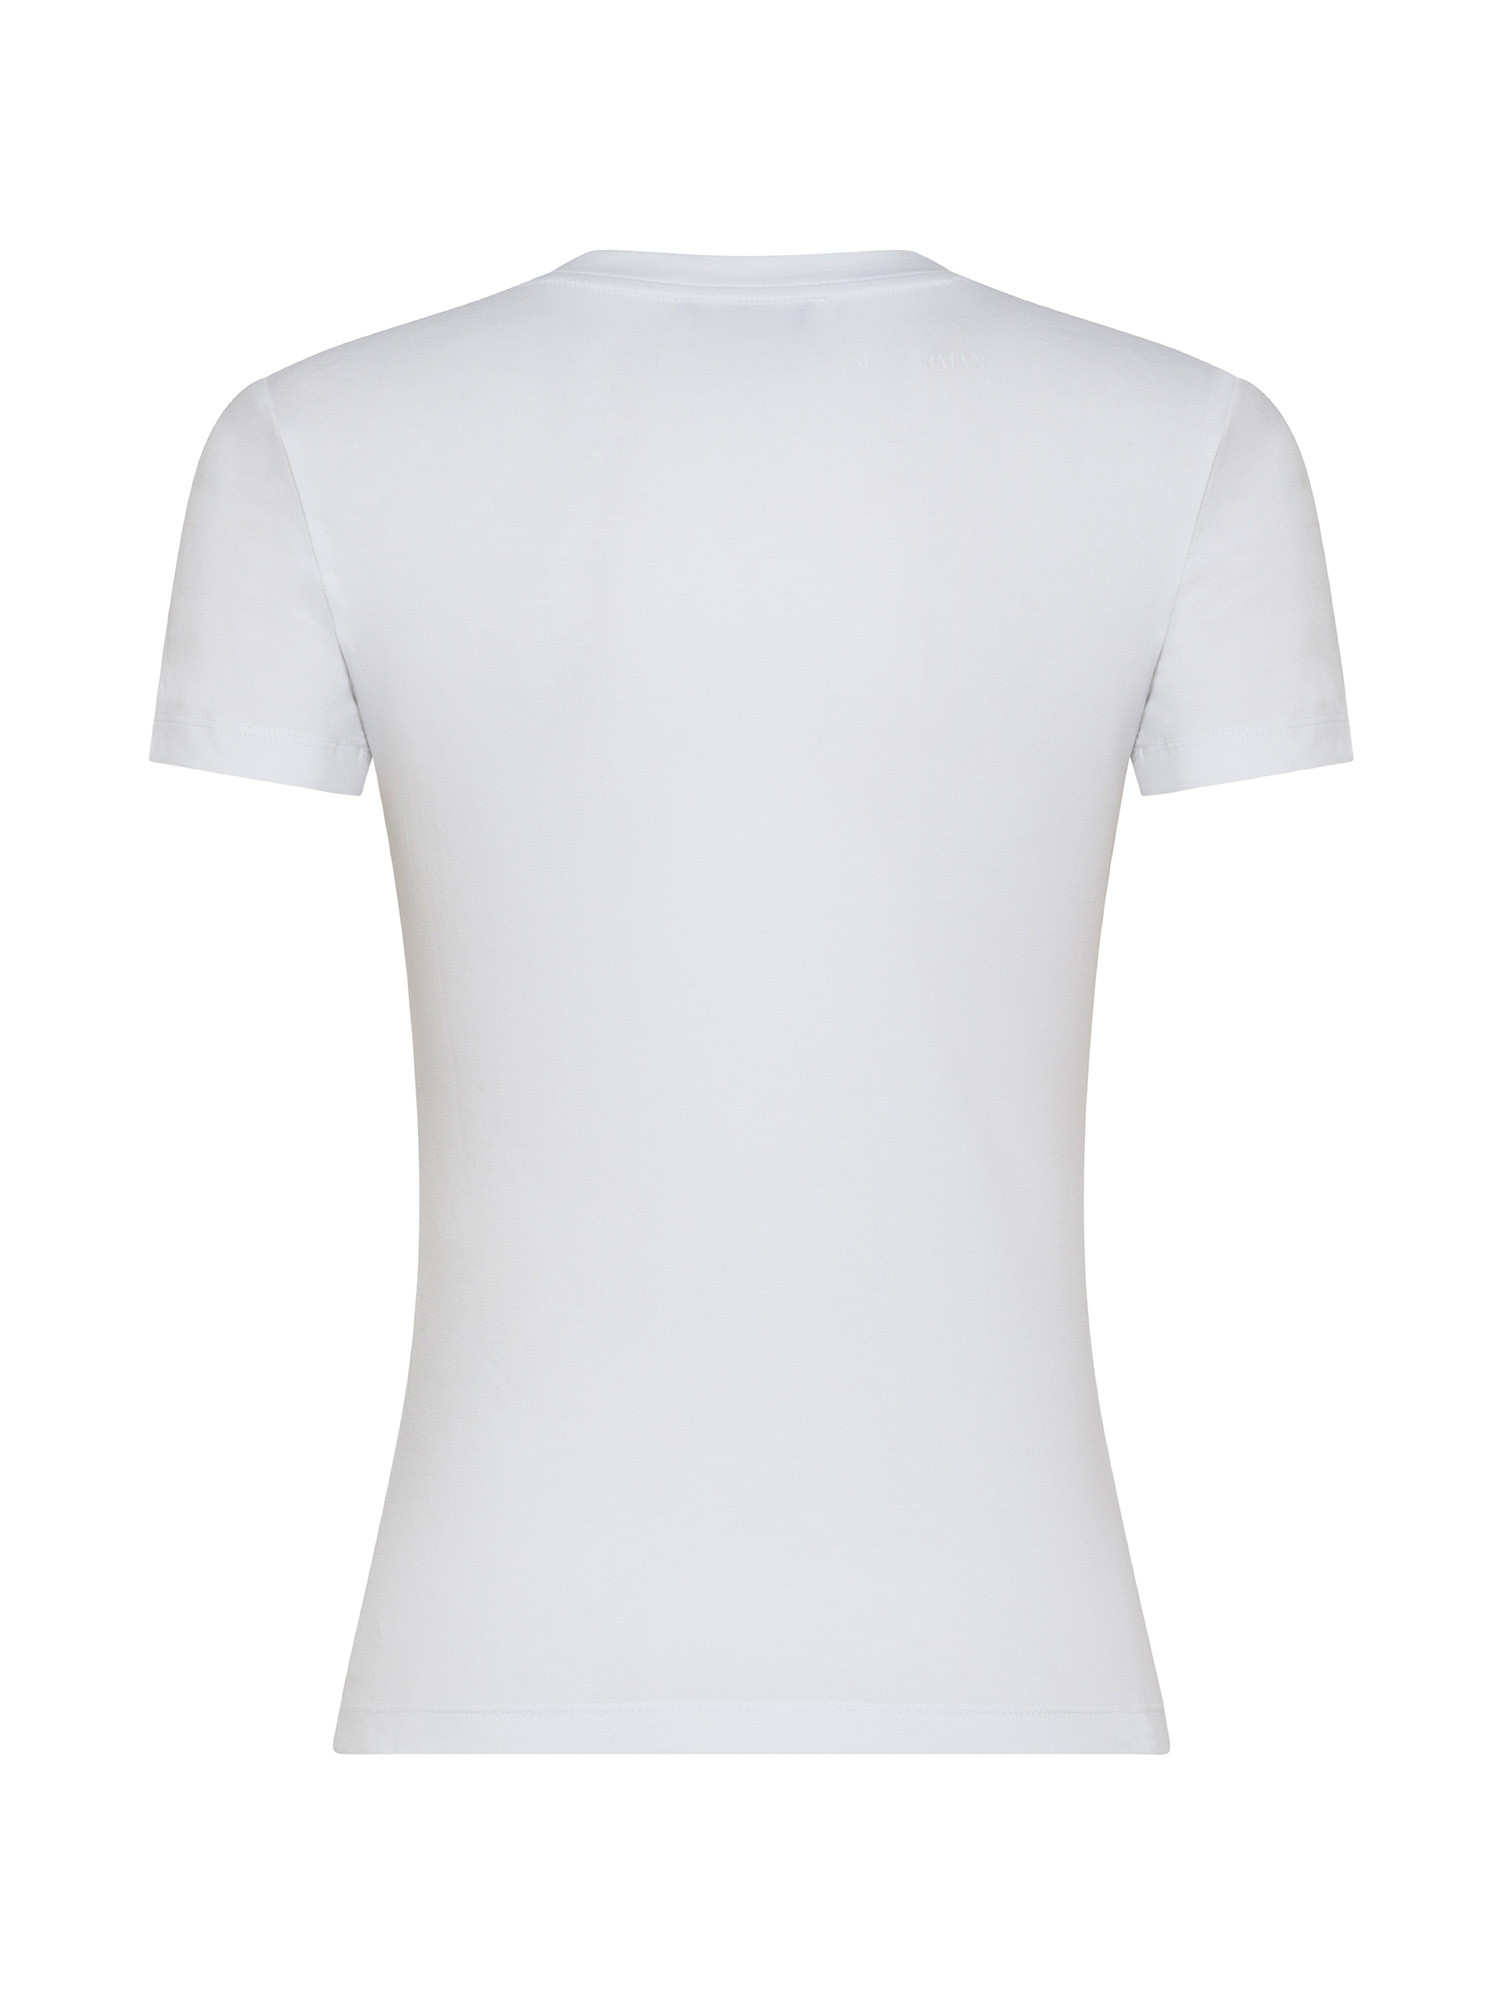 Emporio Armani - T-shirt with rhinestone logo, White, large image number 1